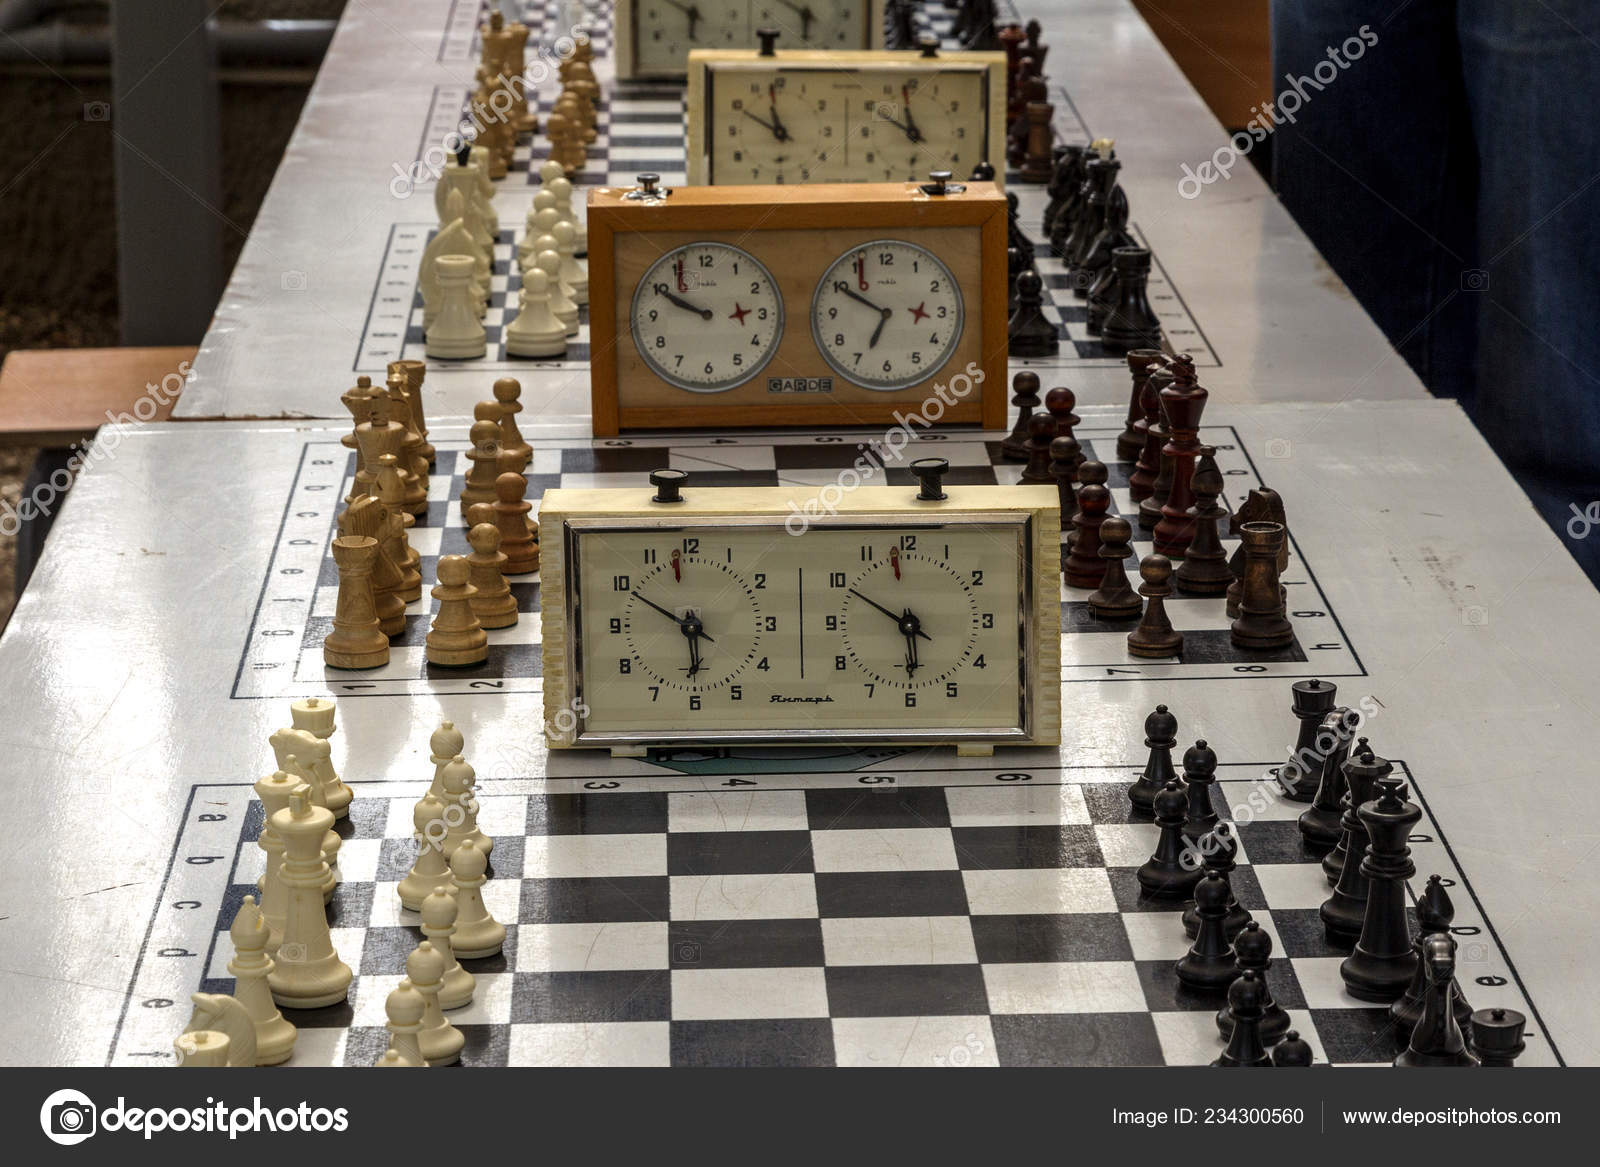 Topview De Um Jogo De Xadrez. Variante De Abertura Espanhola